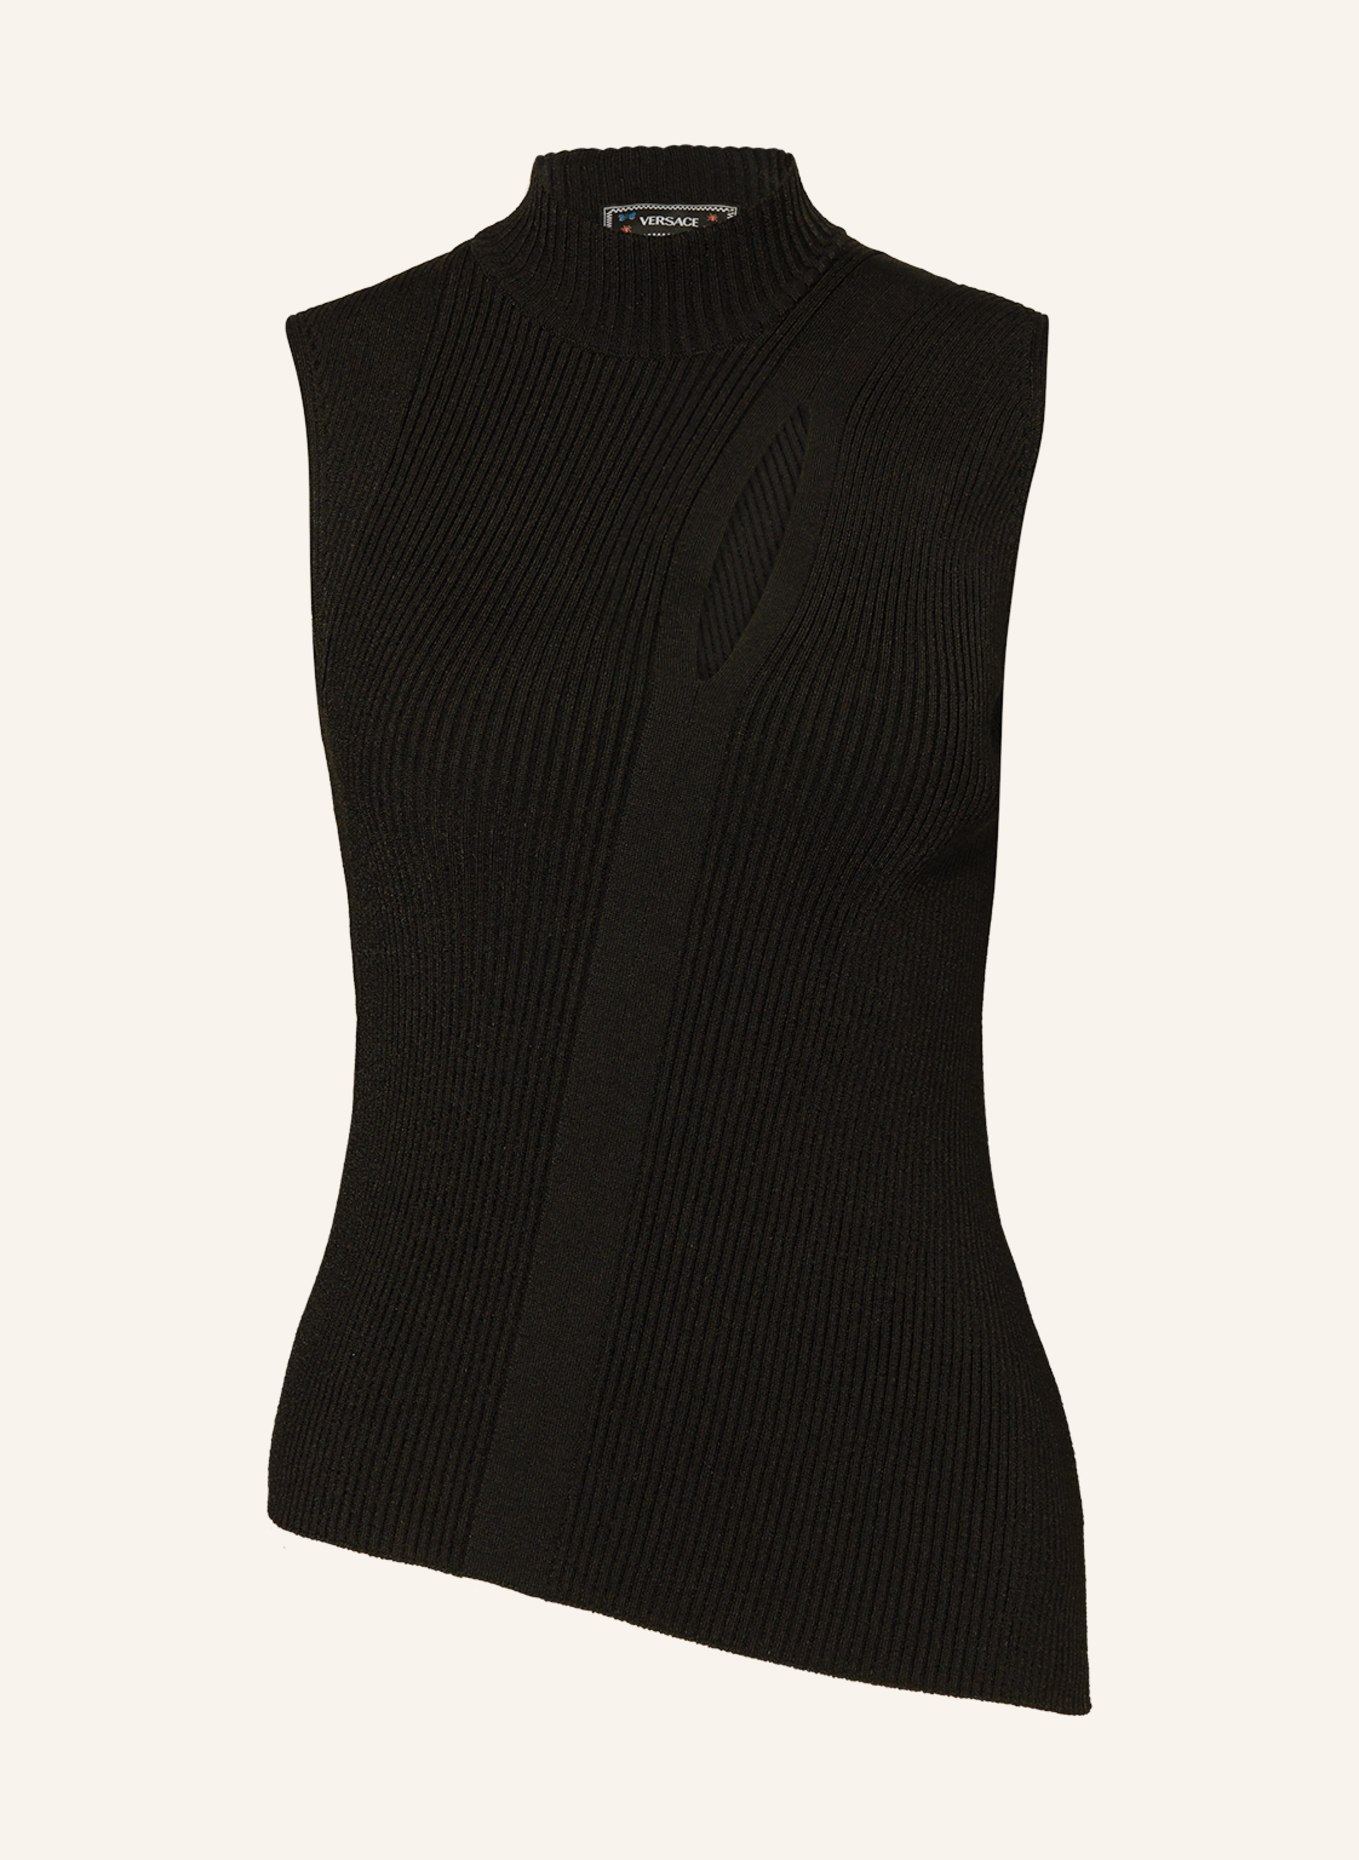 VERSACE Knit top, Color: BLACK (Image 1)